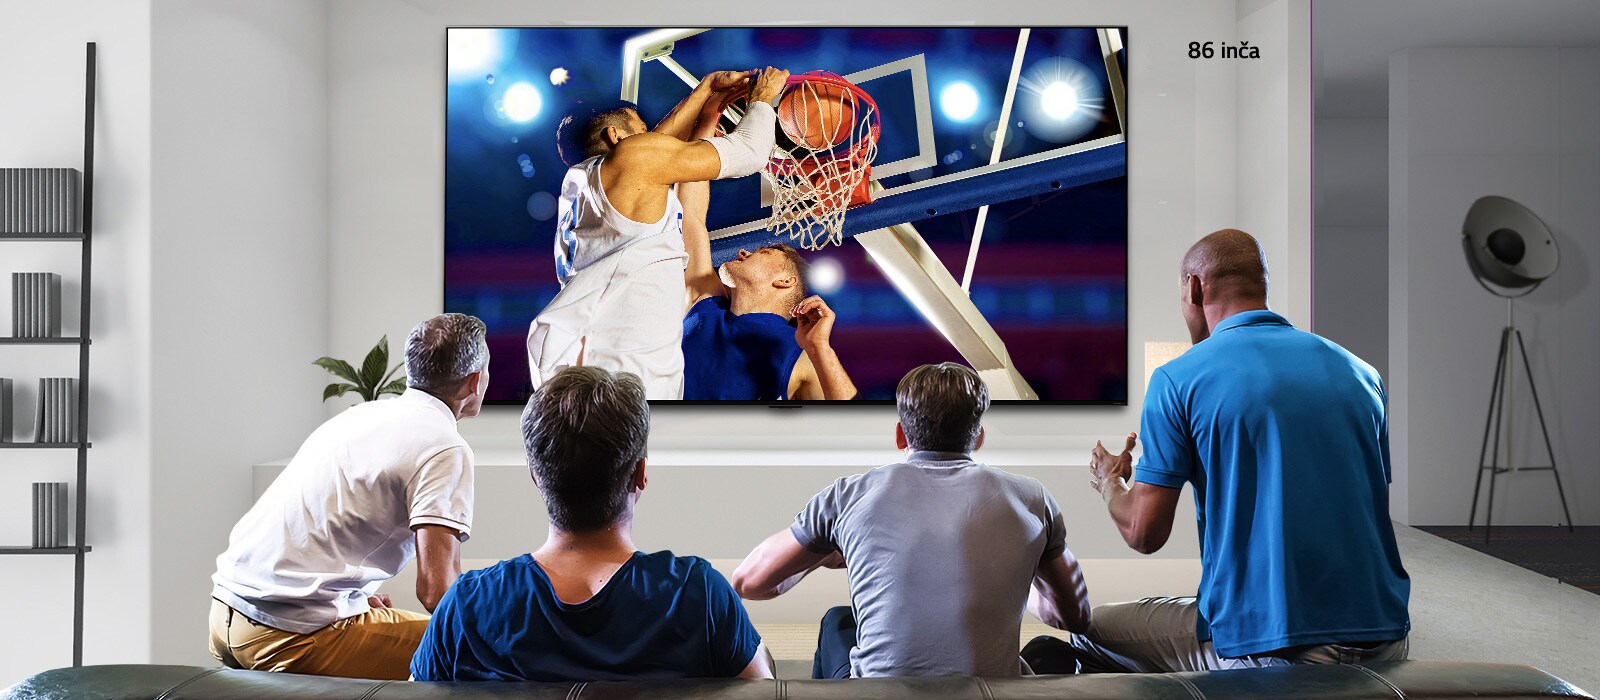 Prikaz stražnje strane televizora koji je montiran na zid, a na kojem se prikazuje košarkaška utakmica koju gledaju četvorica muškaraca. Pomicanjem slijeva nadesno prikazuje se razlika u veličini između zaslona od 43 inča i zaslona od 86 inča.